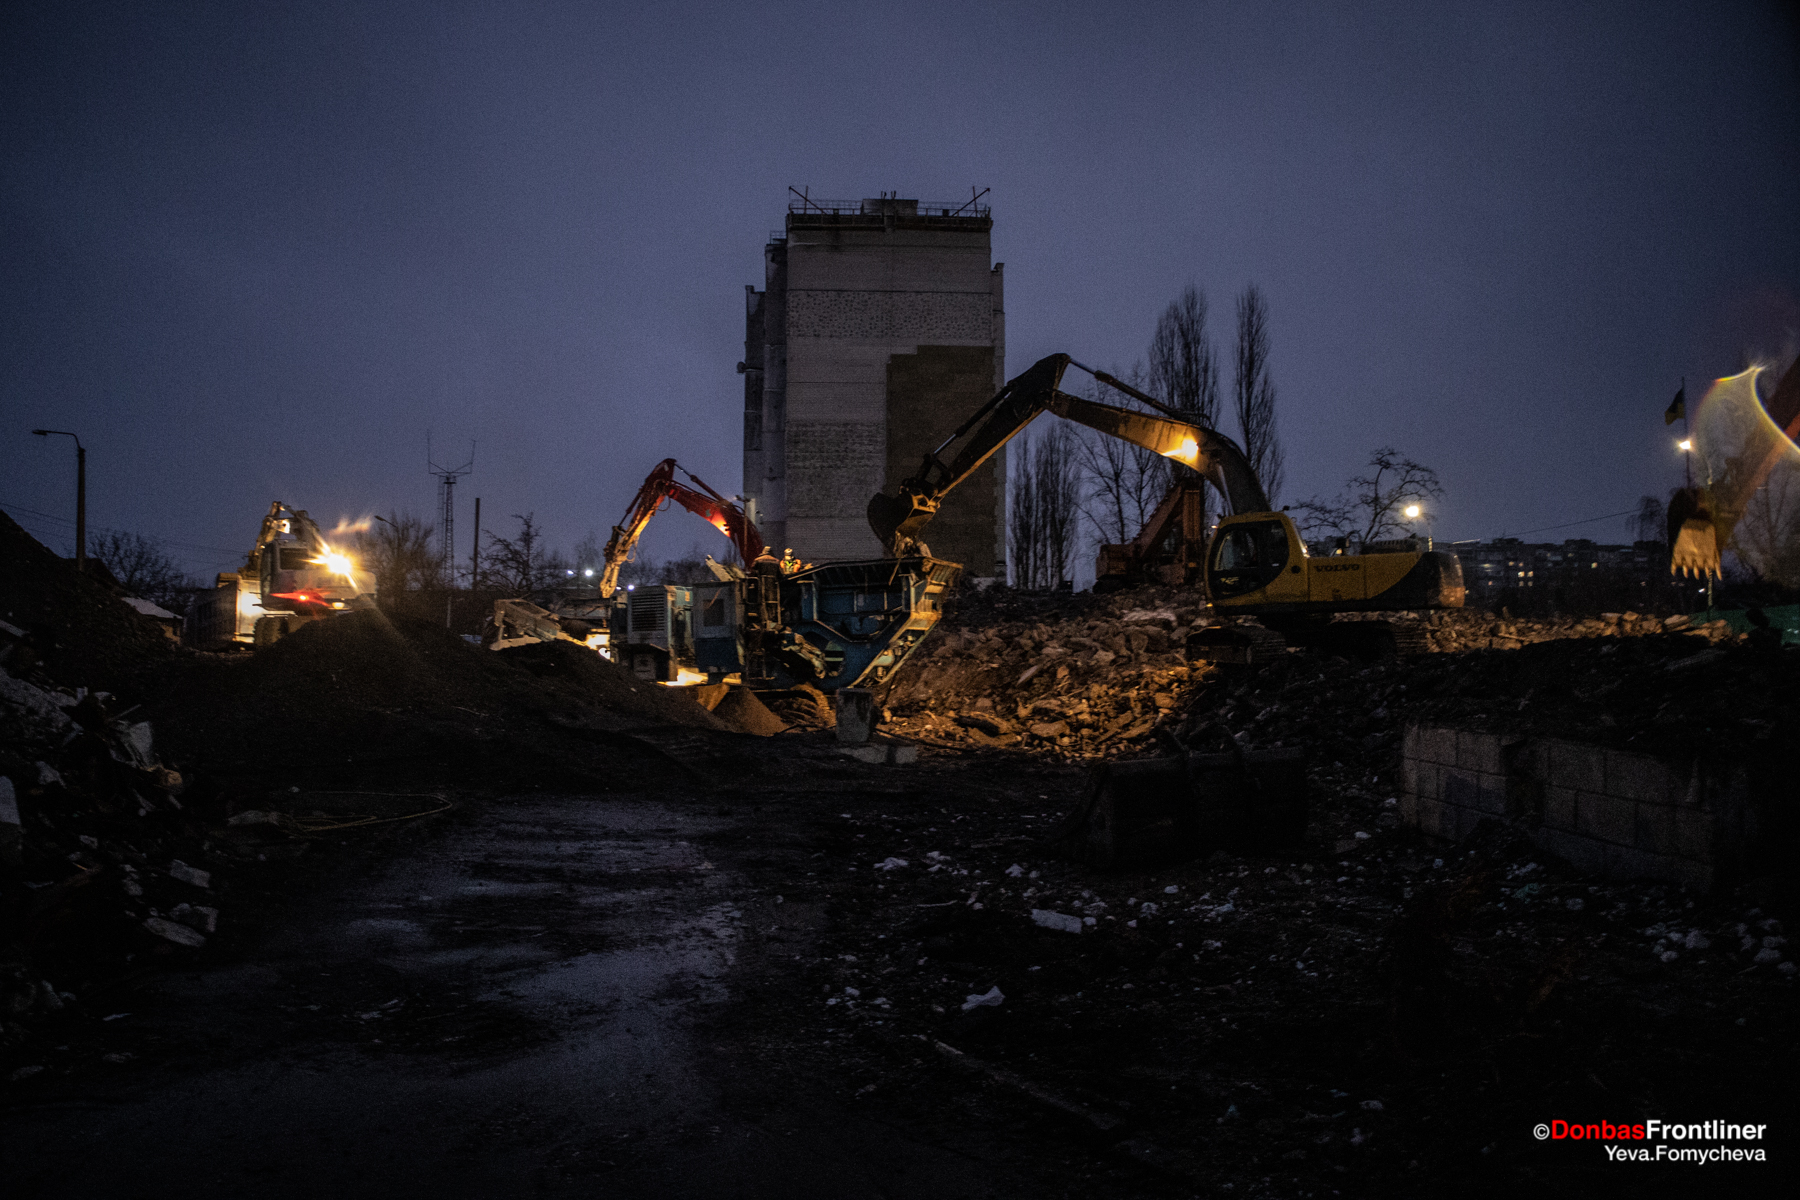 Donbas Frontliner / Будівельна техніка працює над розбором зруйнованої багатоповерхівки.